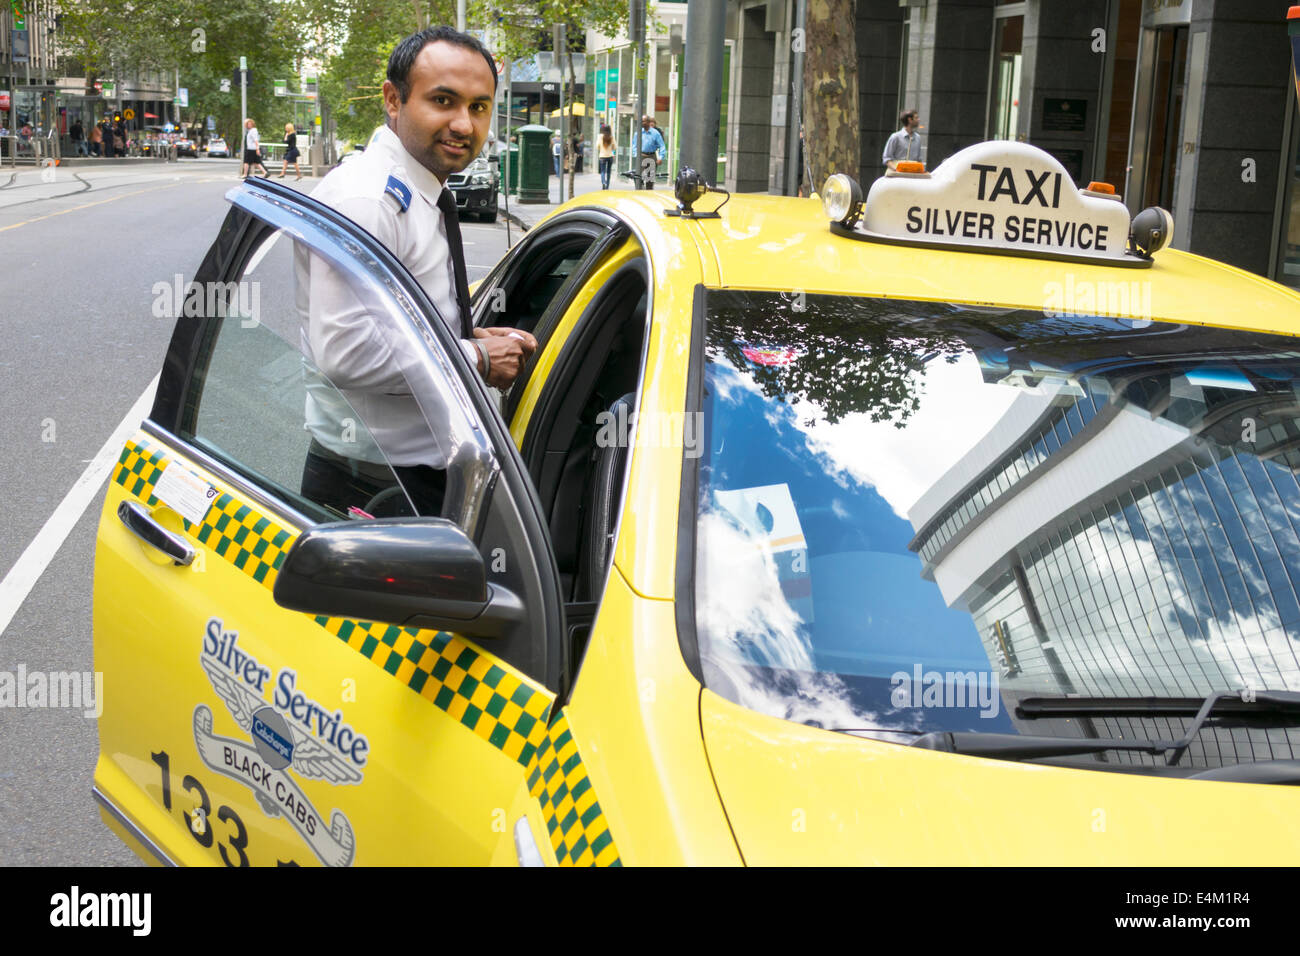 Melbourne Australie, homme asiatique hommes, taxi taxi, chauffeur, travail, travail, transport, AU140318067 Banque D'Images